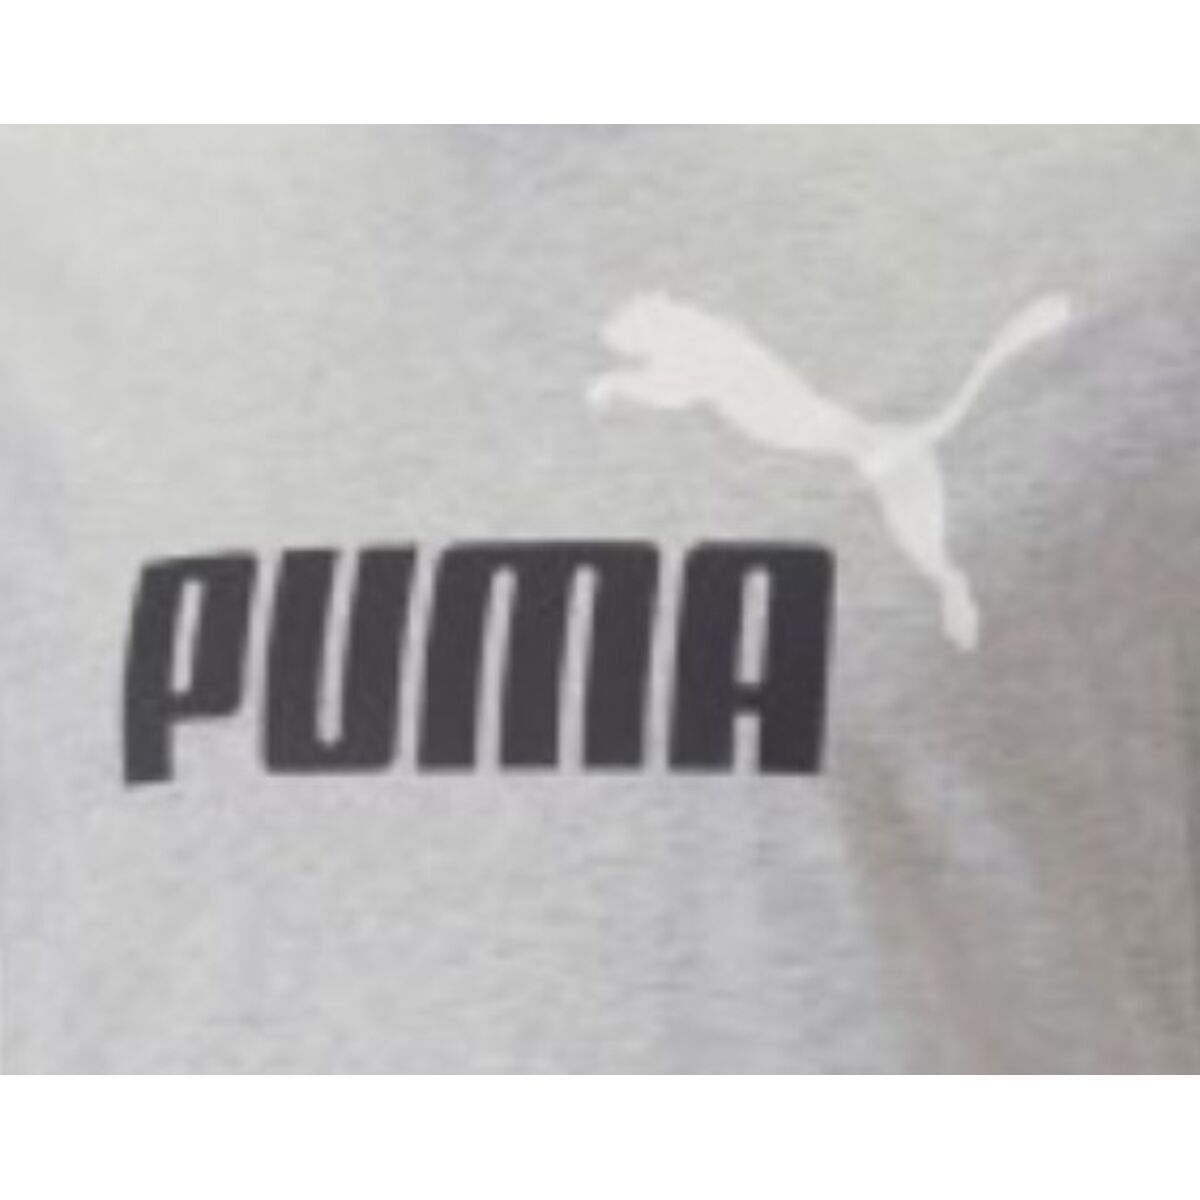 Osta tuote Miesten T-paita Puma ESS 2 COL LOGO 586759 04 Harmaa verkkokaupastamme Korhone: Urheilu & Vapaa-aika 10% alennuksella koodilla KORHONE